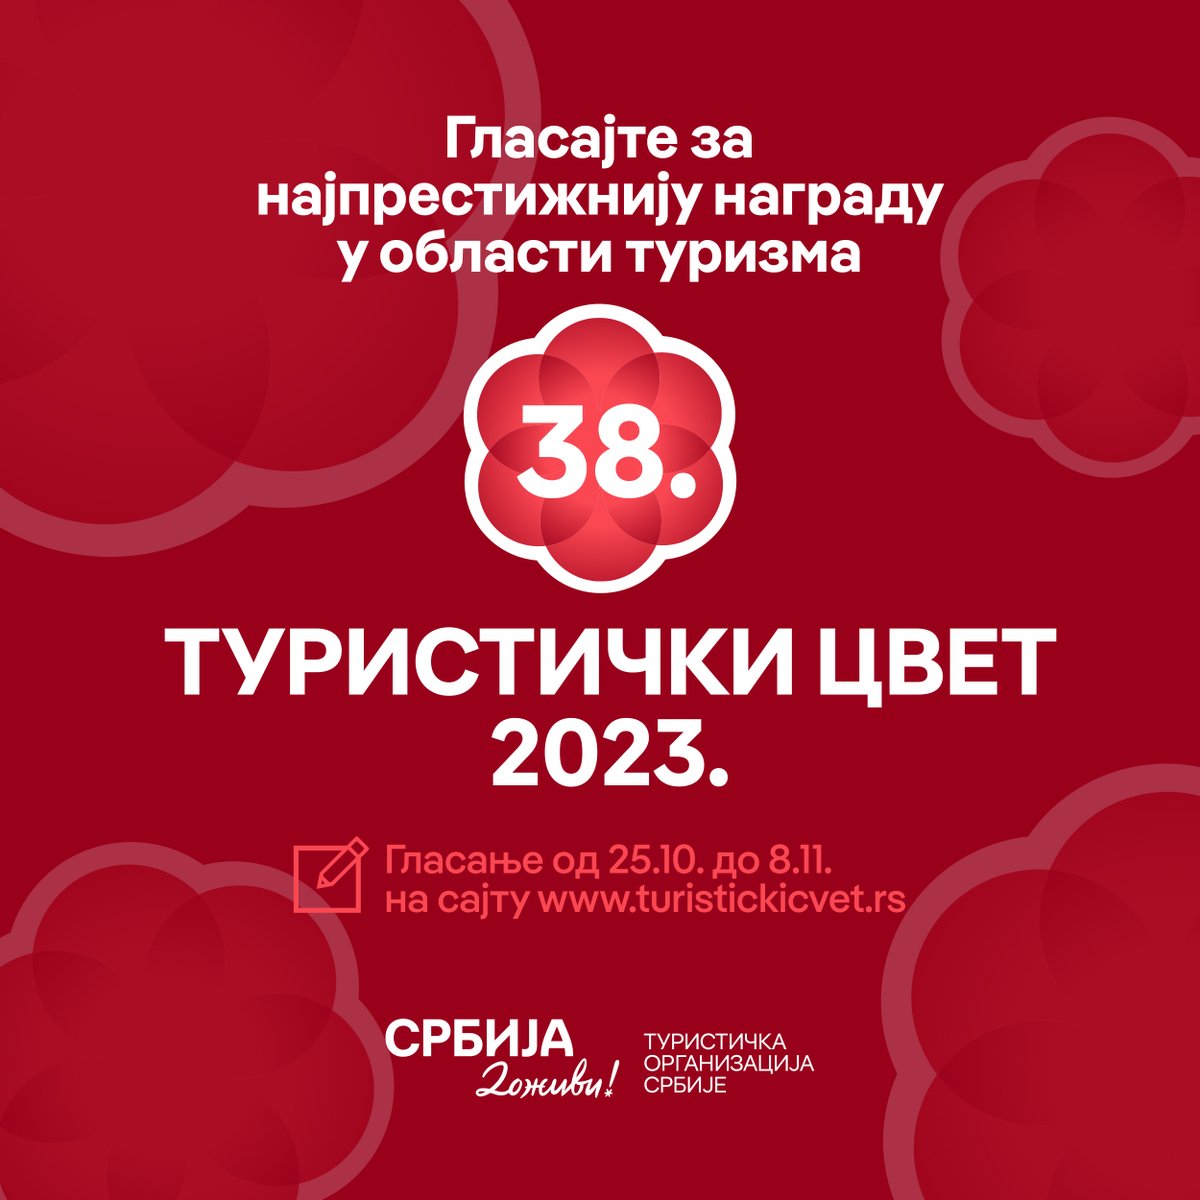 📢 Glasanje za 'Turistički cvet 2023', najprestižniju nagradu u oblasti turizma, je počelo i trajaće do 8. novembra! Glasajte brzo i lako putem linka turistickicvet.rs/glasanje.html Srećno svim učesnicima! 🍀 #experienceSerbia #serbiacreatesmemories #serbia